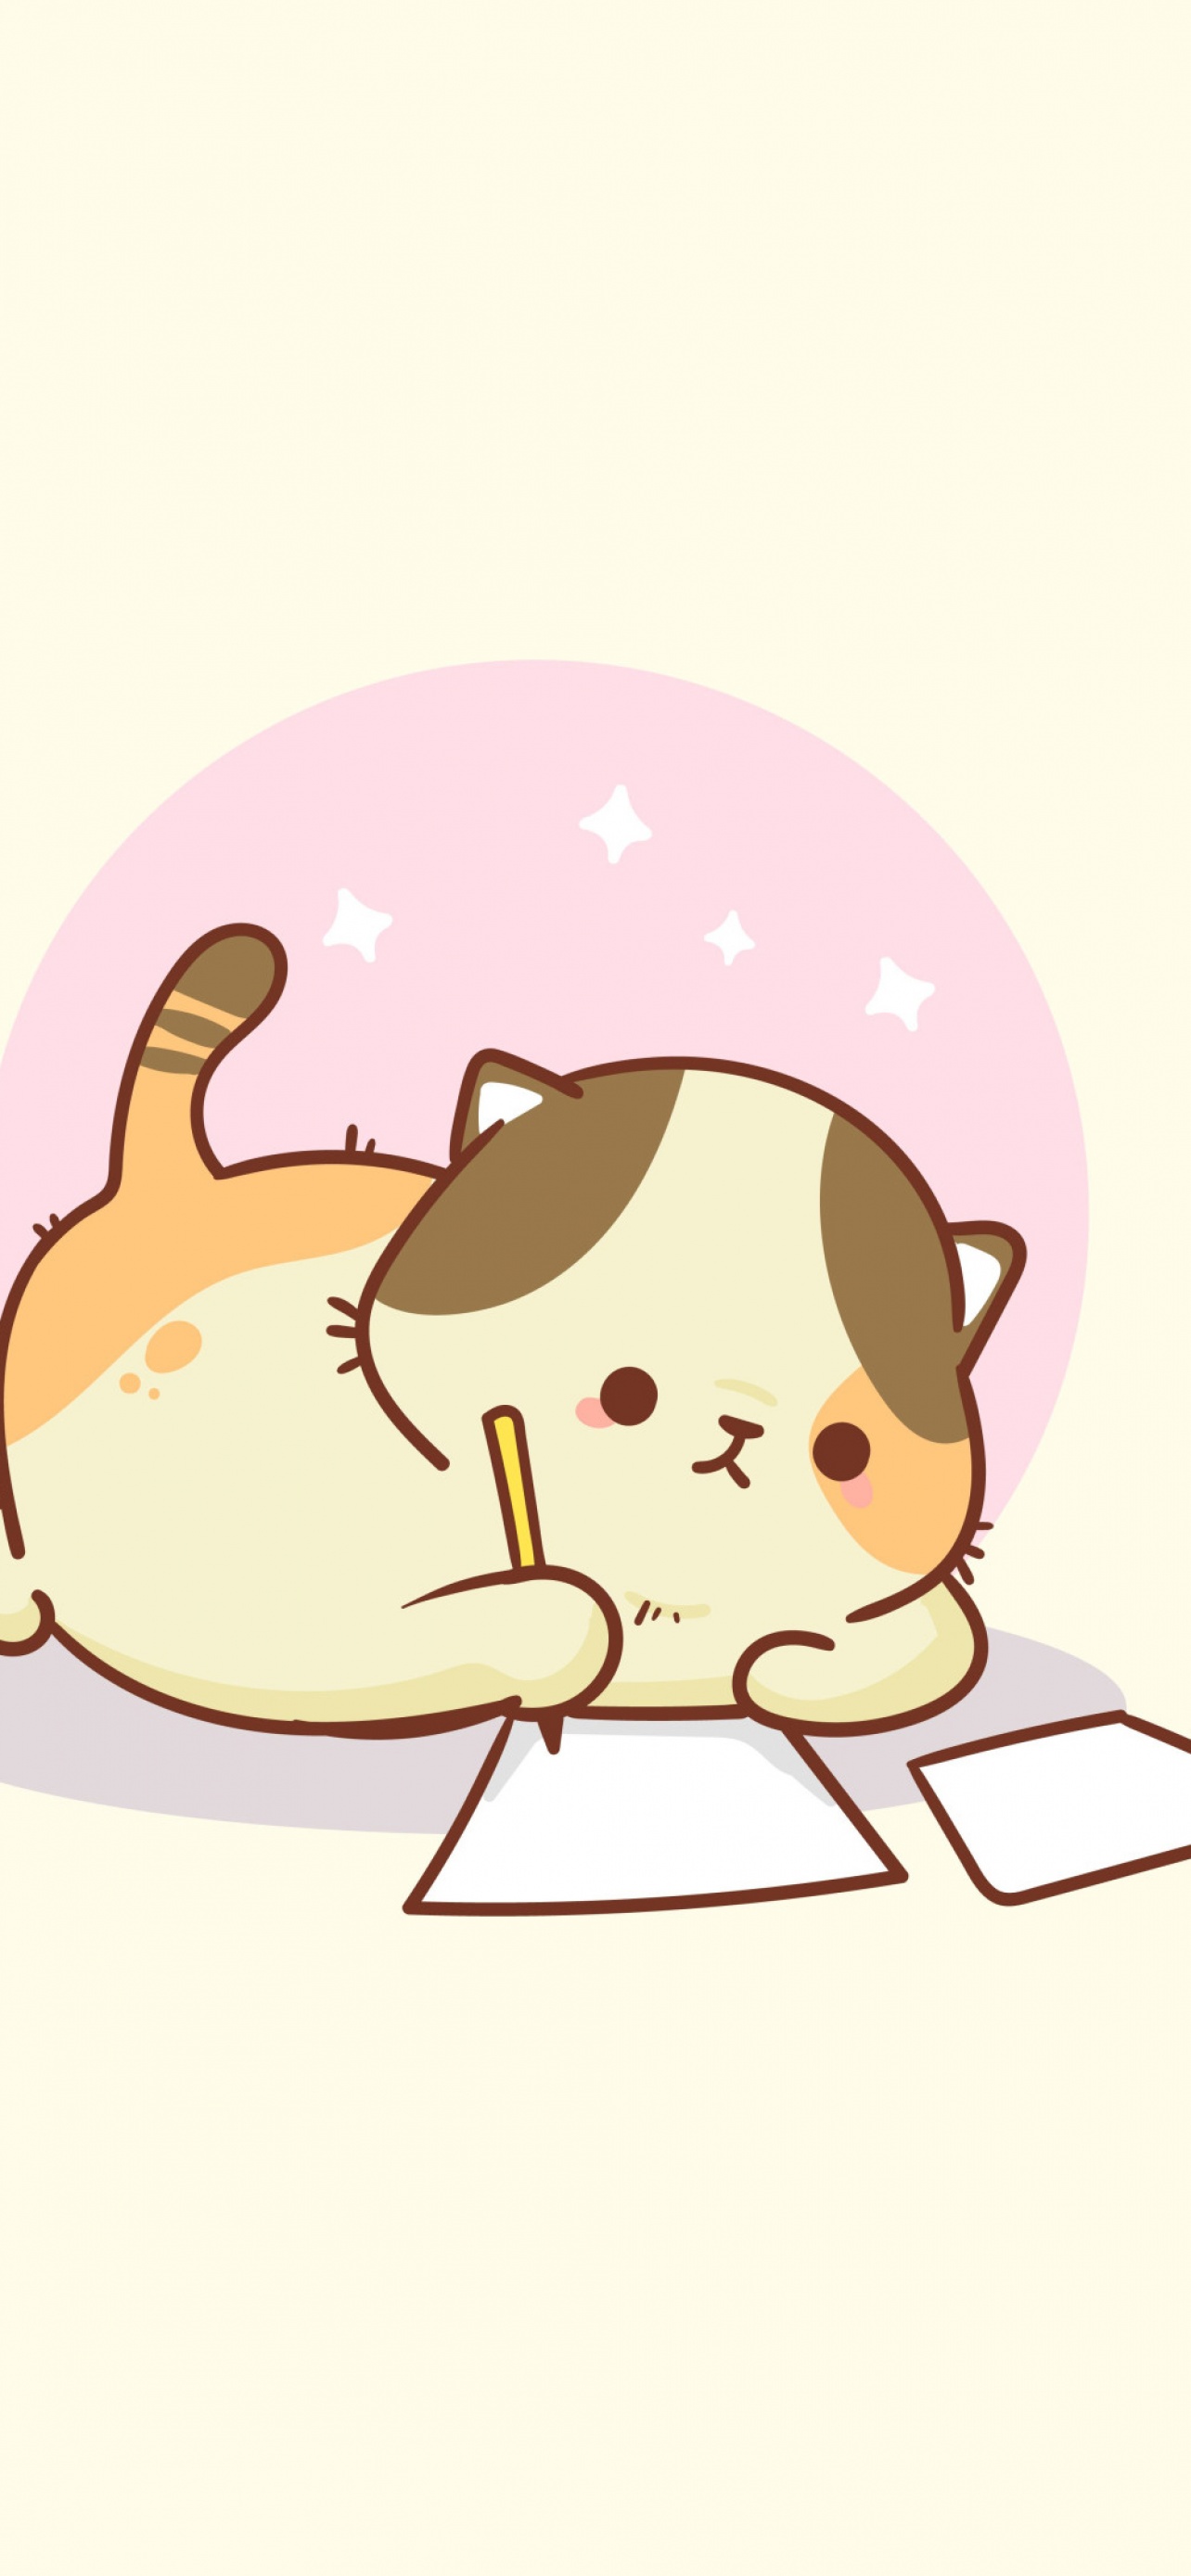 40+] Cute Anime Cat Wallpaper - WallpaperSafari